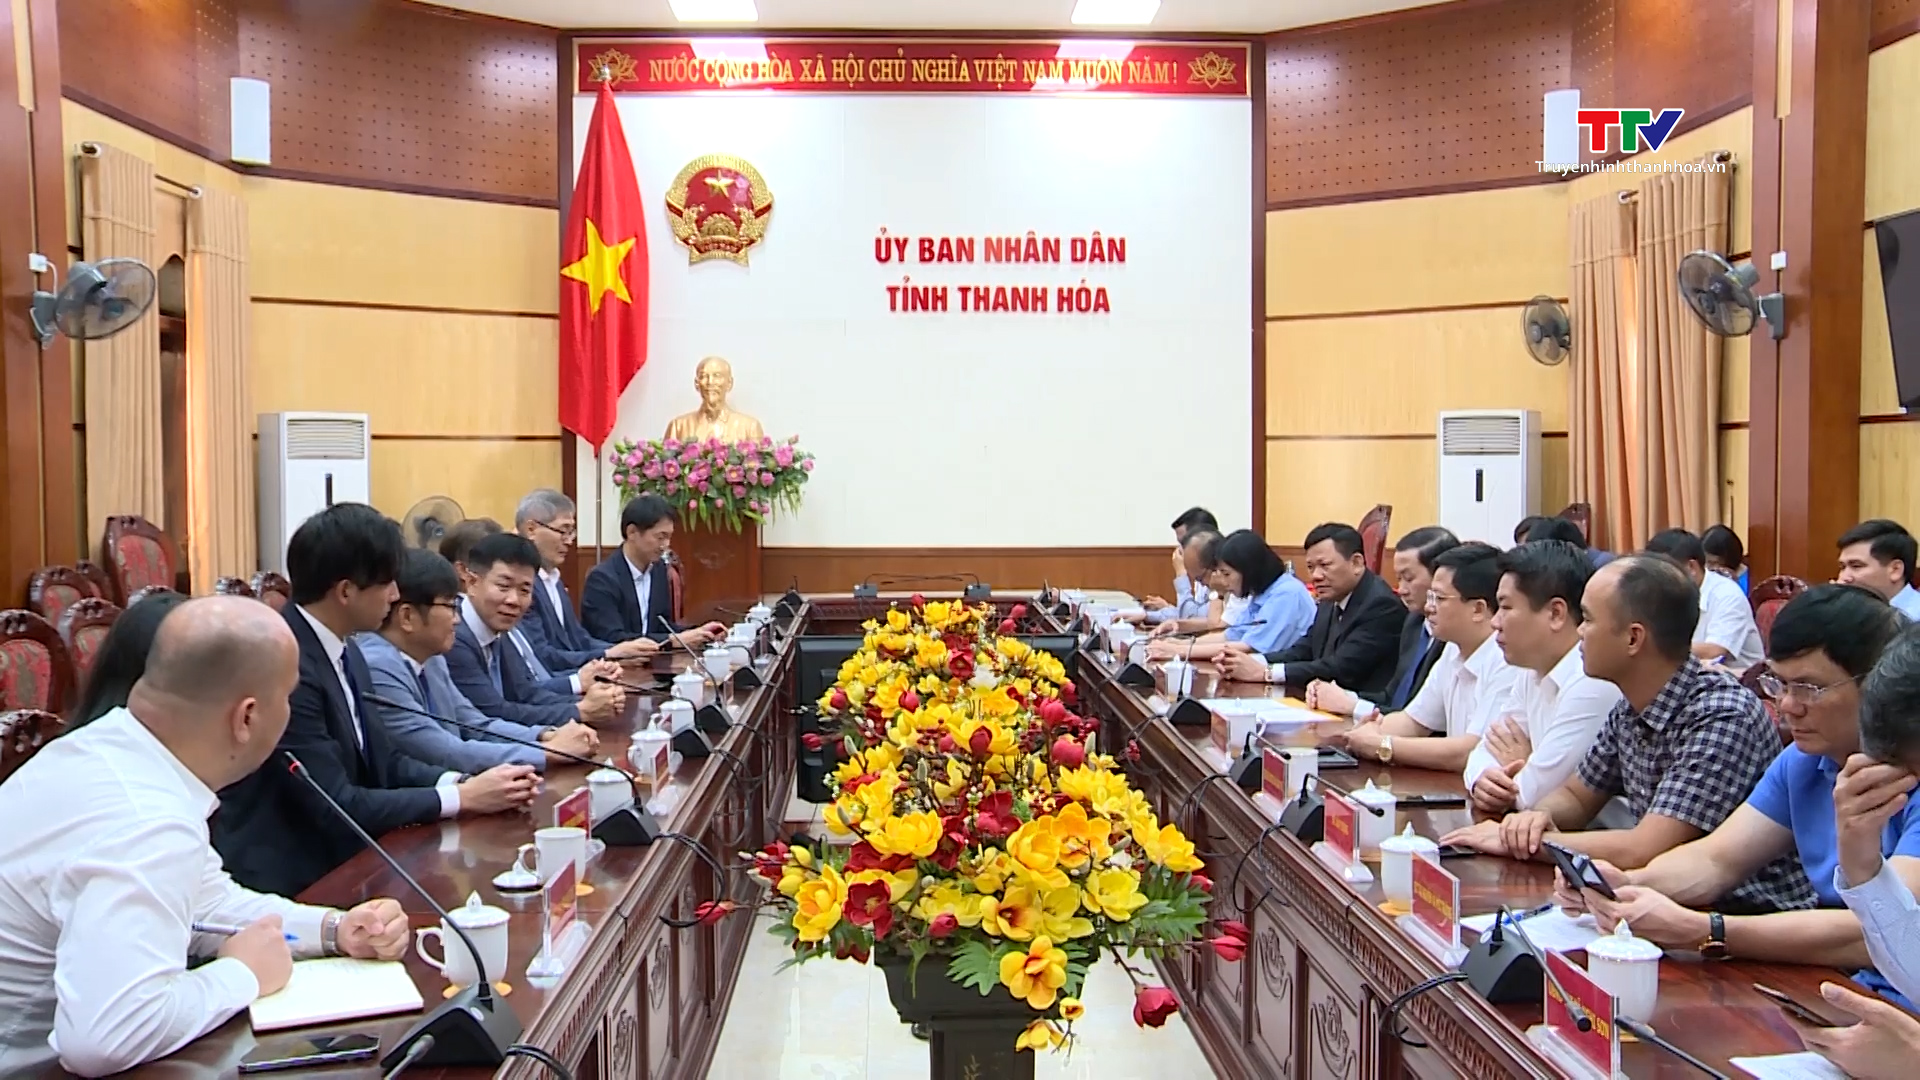 UBND tỉnh Thanh Hóa làm việc với Công ty TNHH Điện Nghi Sơn 2 - Ảnh 2.